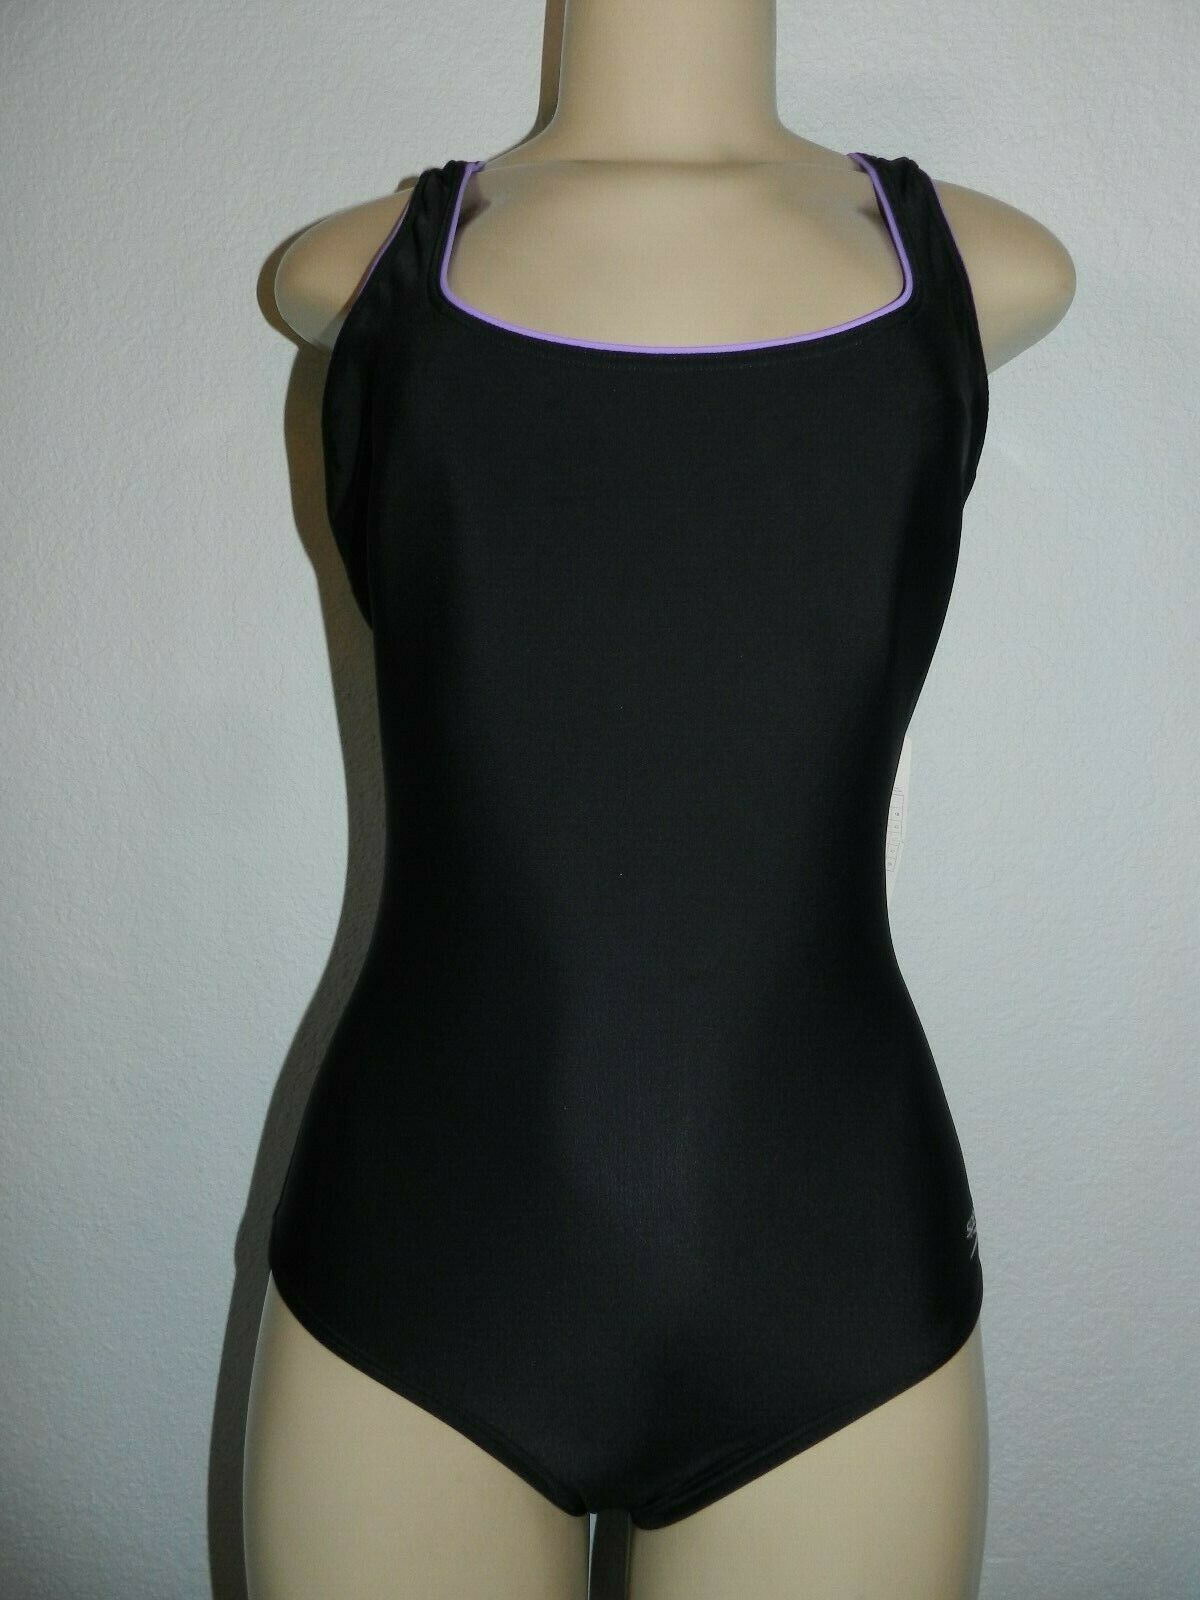 Speedo Ultraback Racerback Swimsuit Womens 8 Shelf Bra Blackpurple New Swimwear